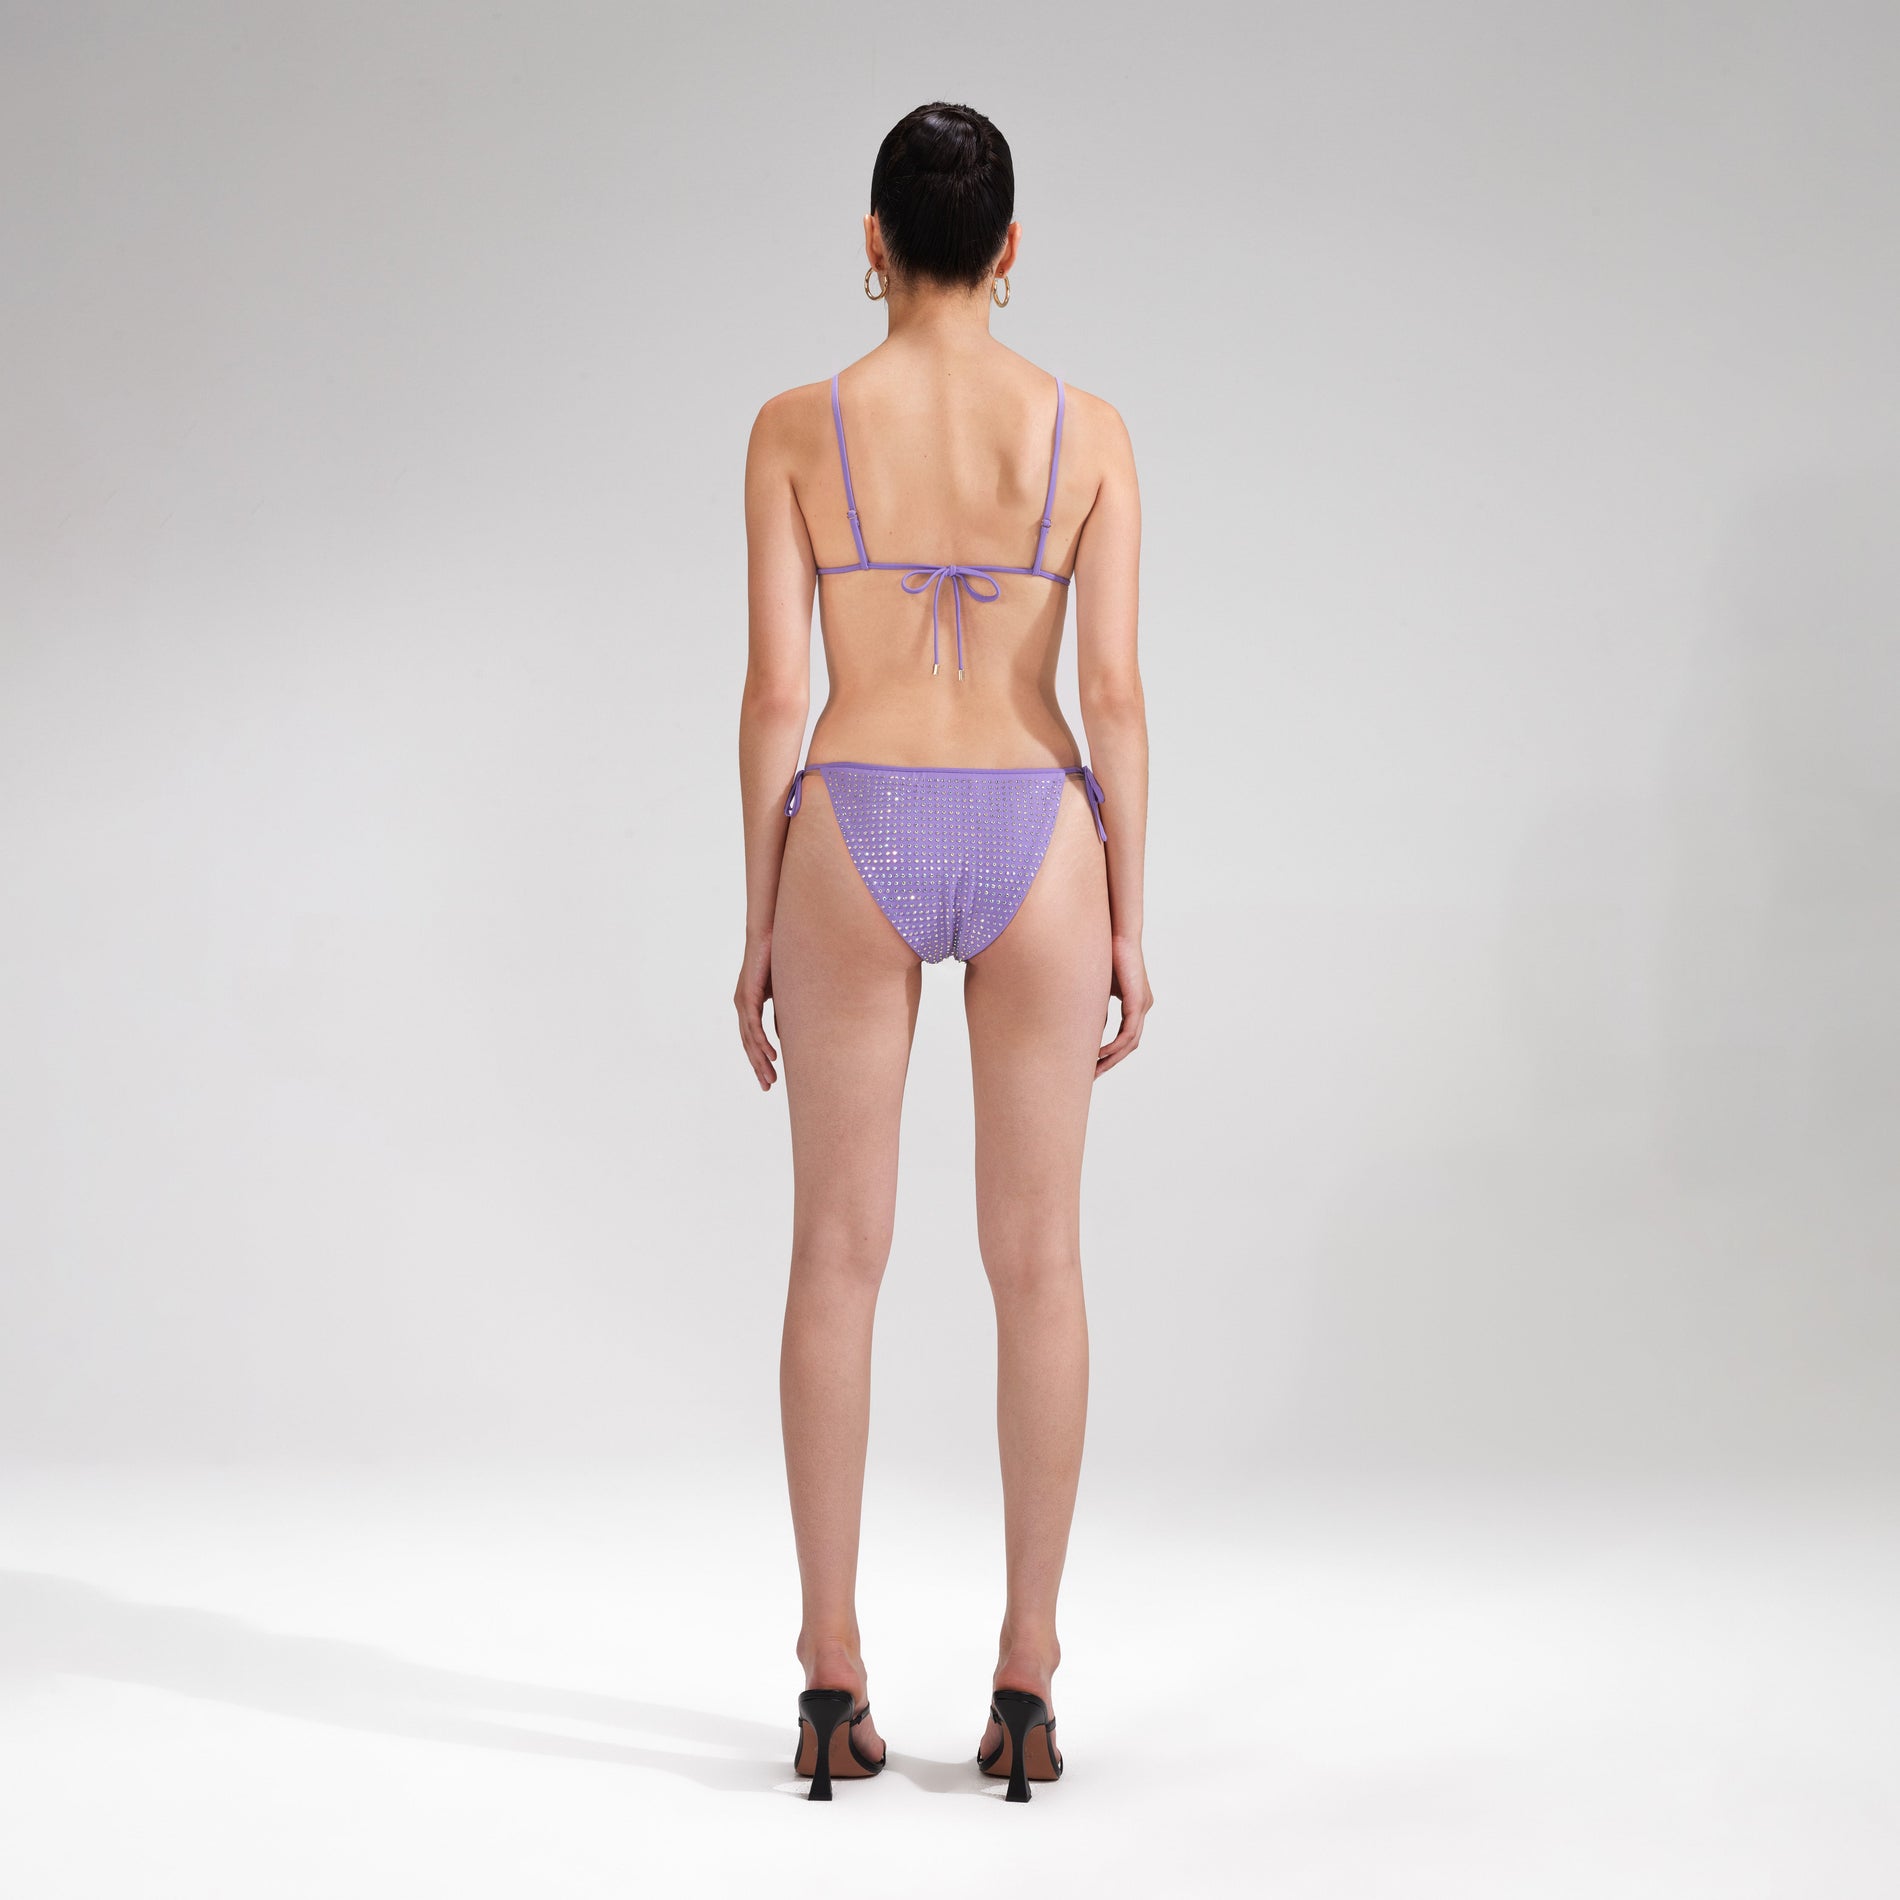 A woman wearing the Purple Rhinestone Bikini Brief